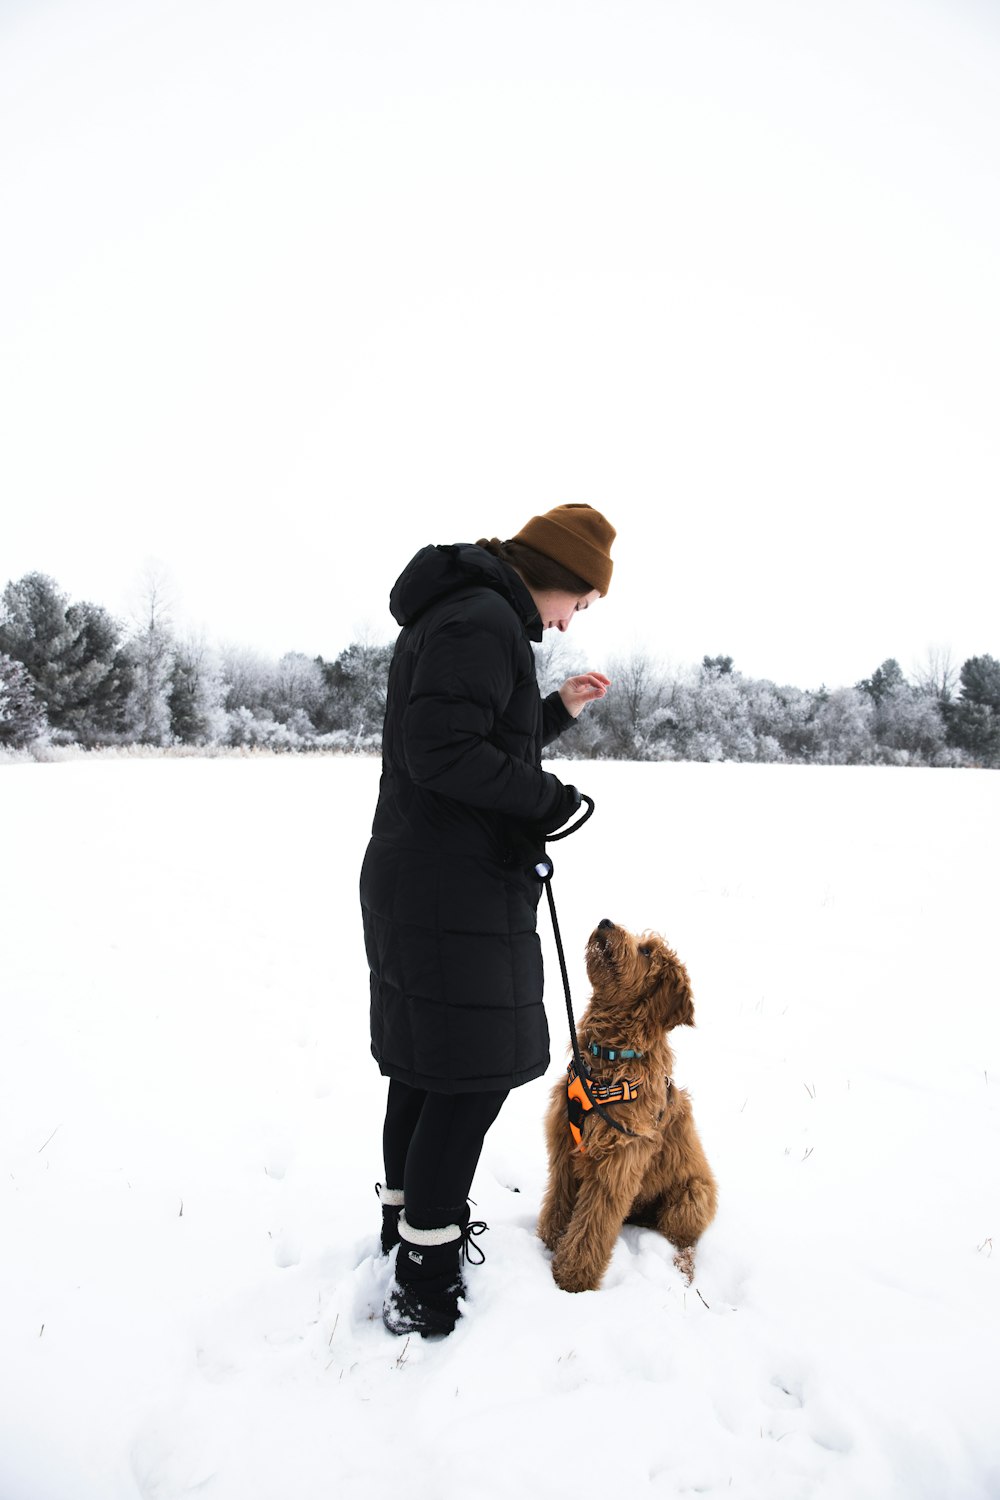 Mujer con chaqueta negra y pantalones marrones de pie en el suelo cubierto de nieve junto a un perro marrón durante